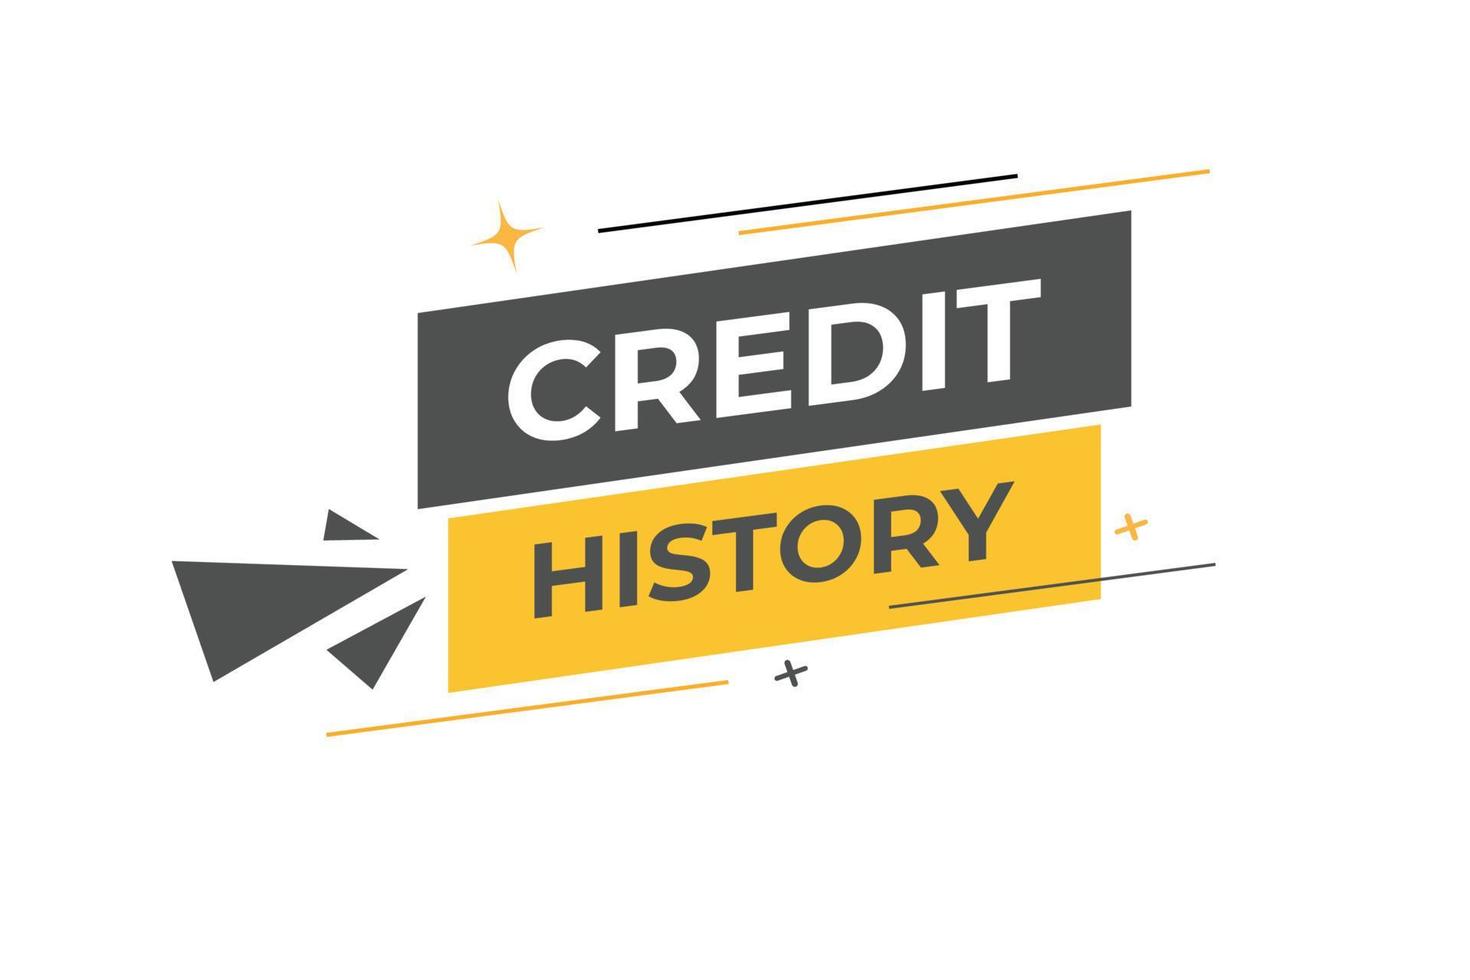 credit geschiedenis knop. toespraak bubbel, banier etiket credit geschiedenis vector